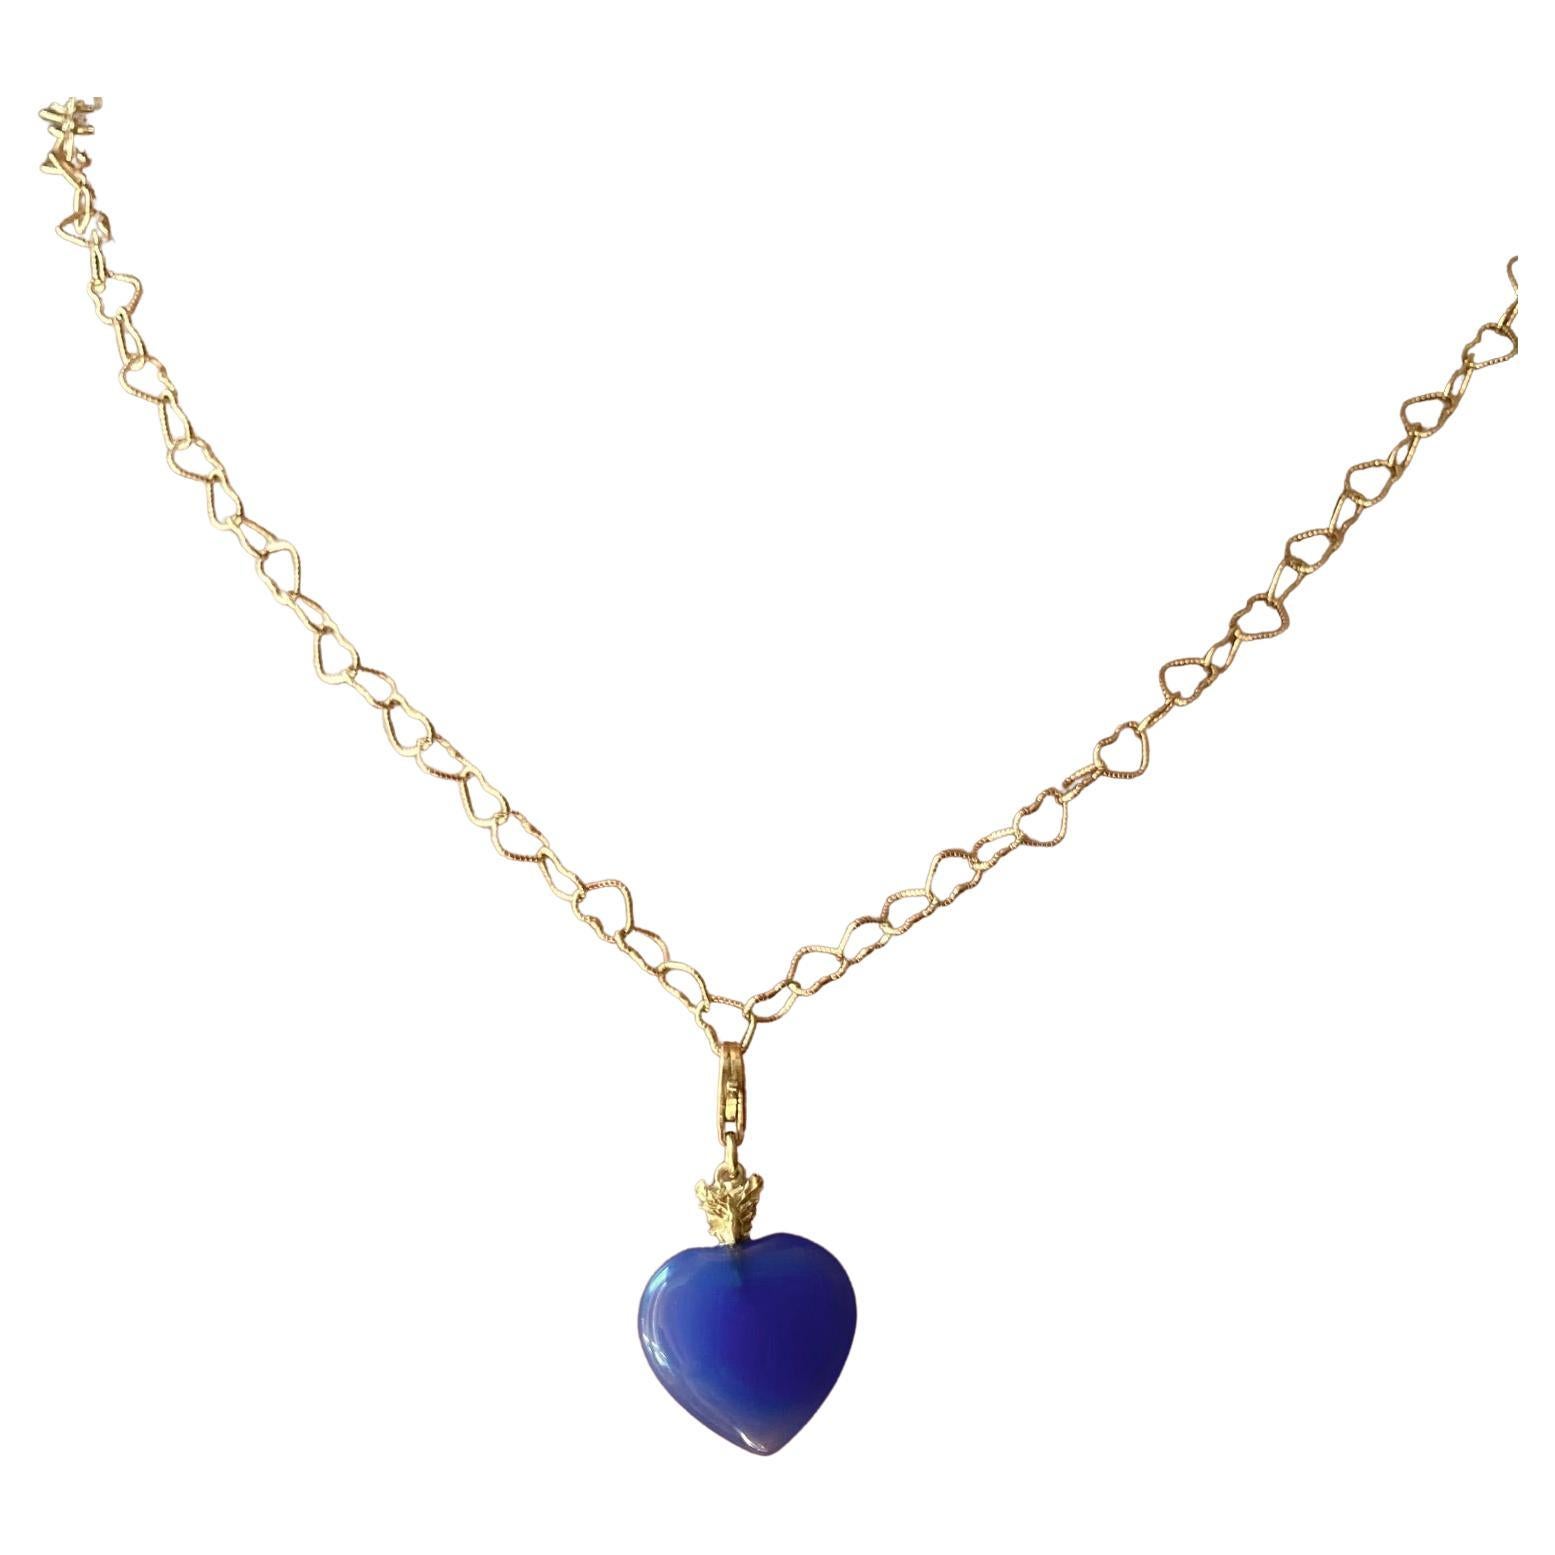 Collier pendentif romantique en or jaune 18 carats avec chaîne en maille et breloque en forme de cœur bleu